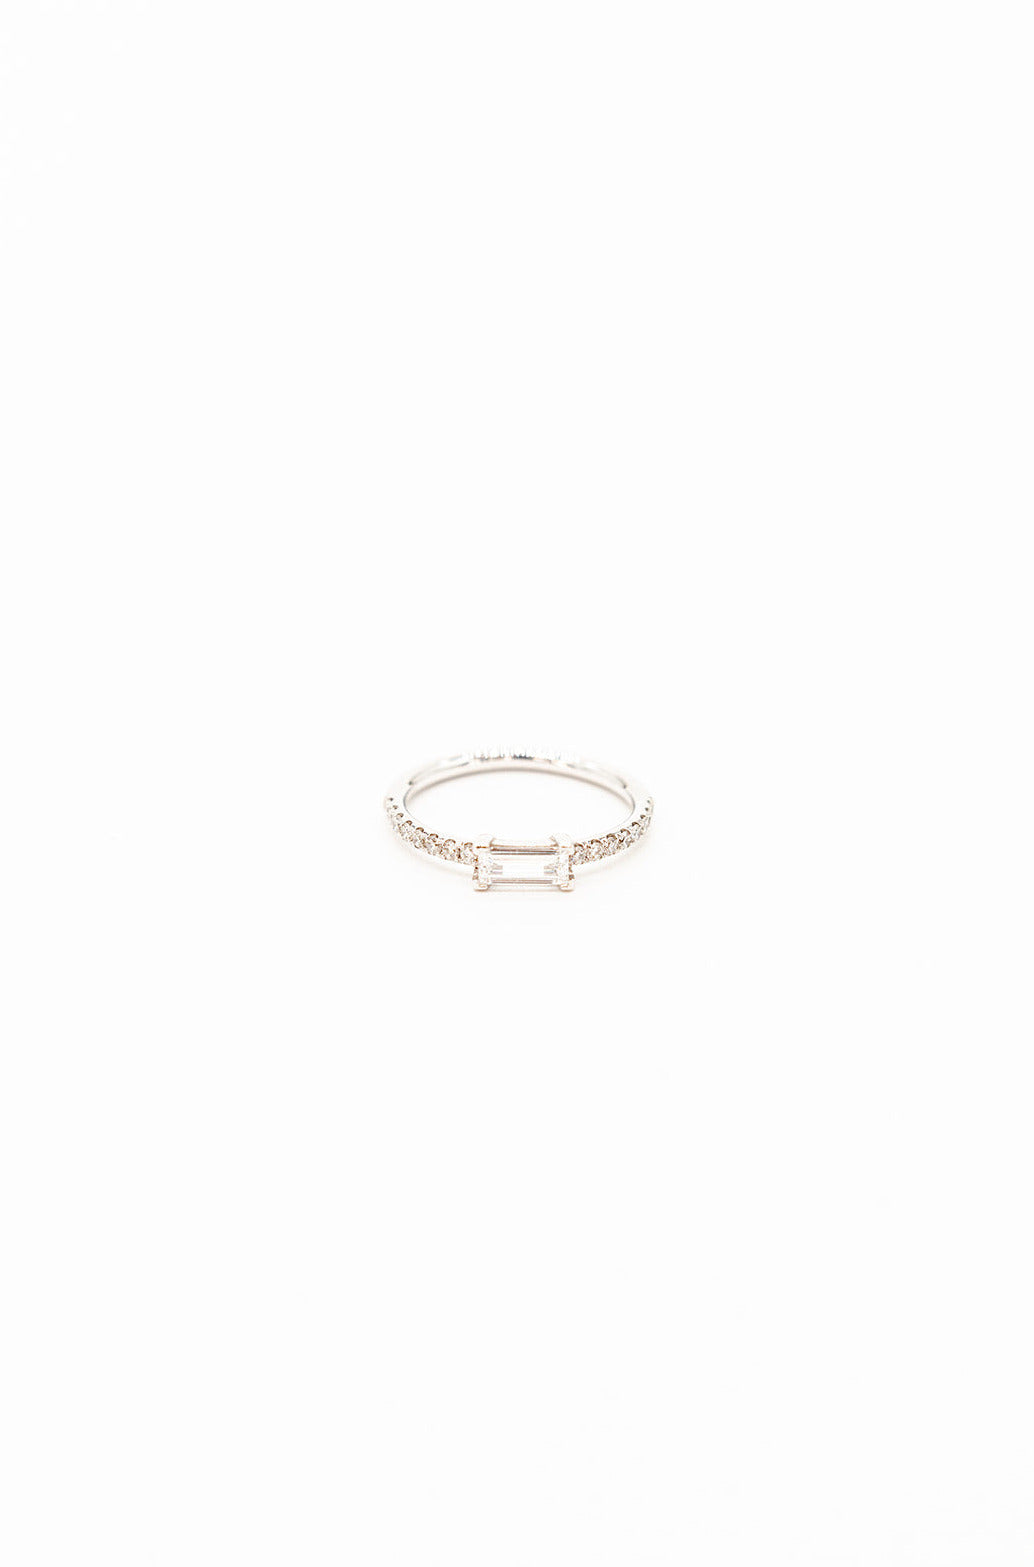 18K White Gold Diamond Baguette Thread Ring